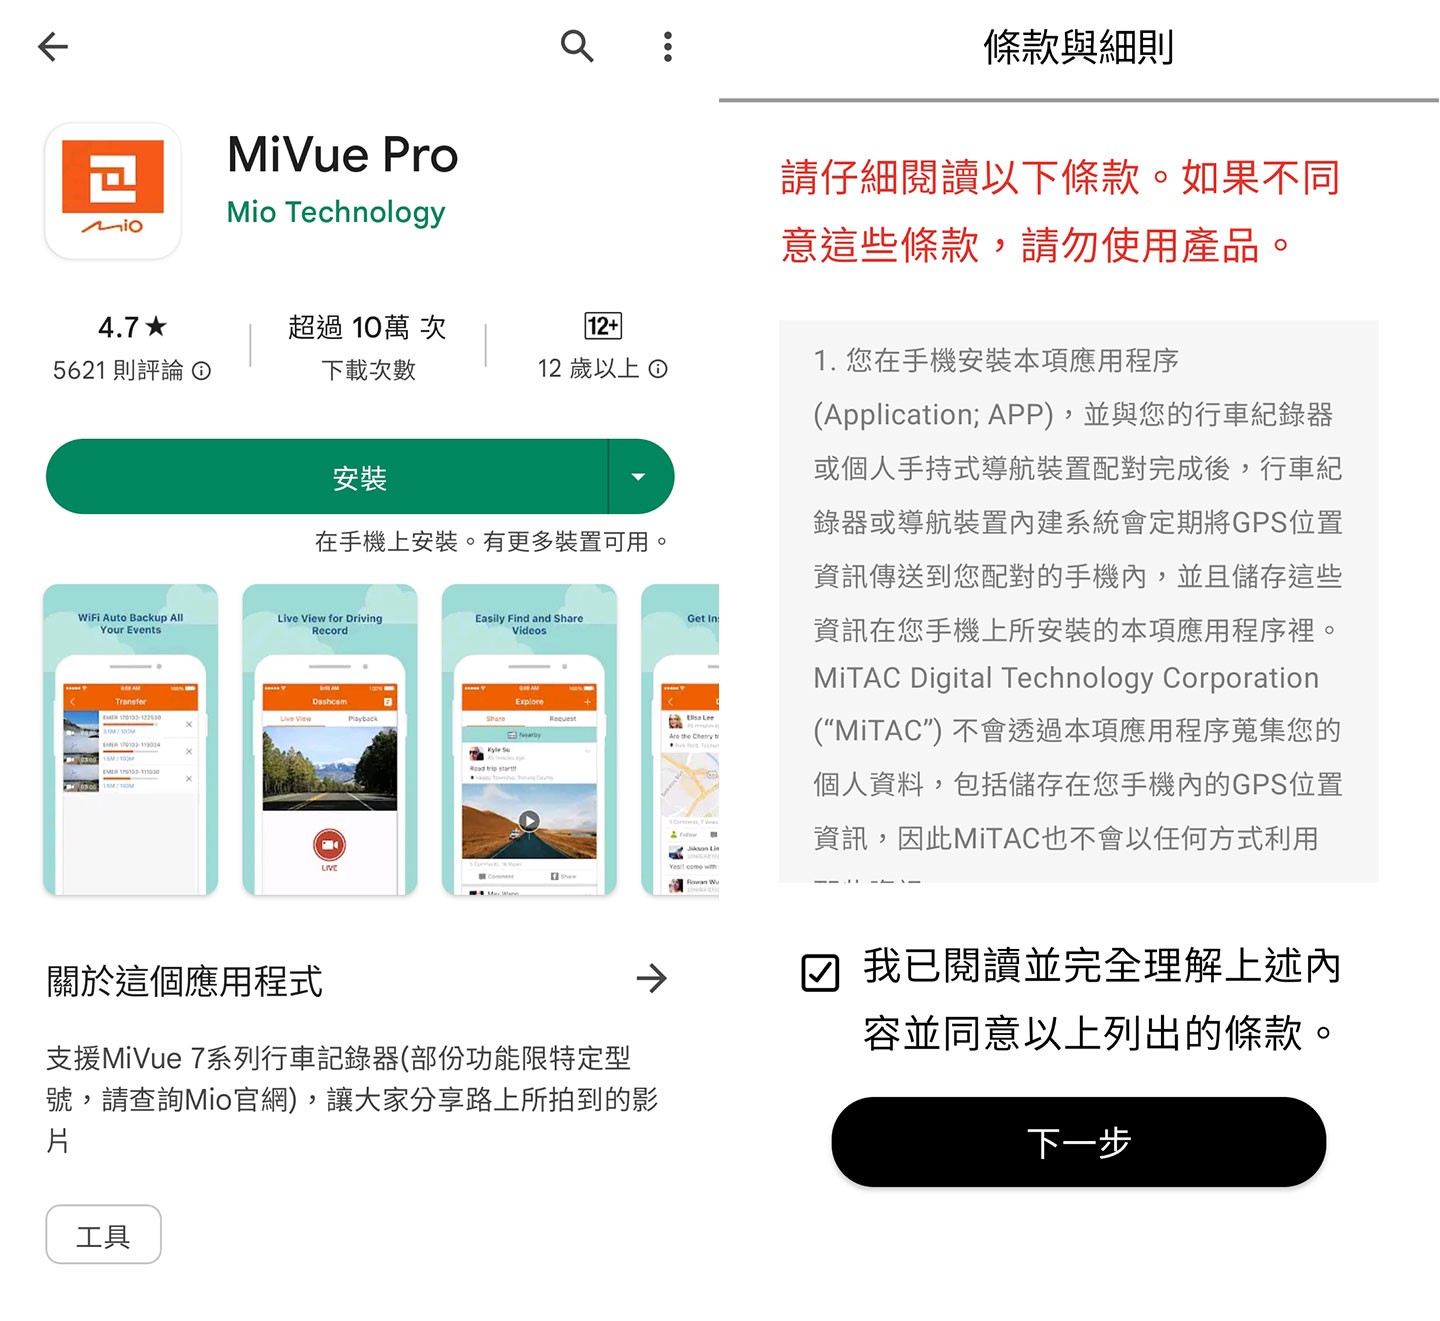 利用手機搜尋 MiVue Pro 應用工具並免費下載安裝。